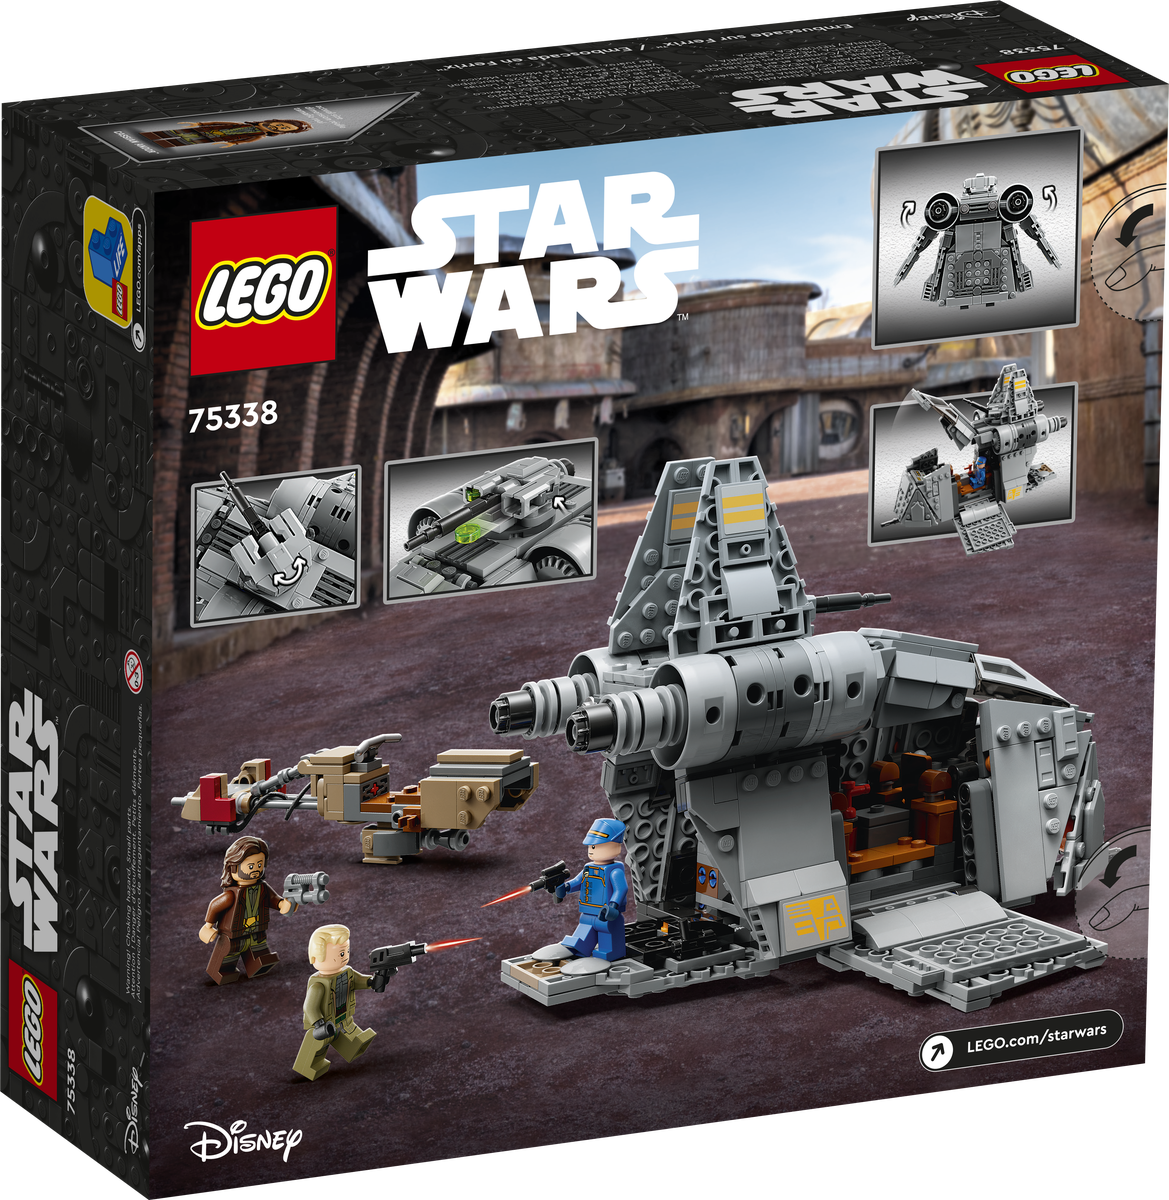 LEGO Star Wars Emboscada en Ferrix 75338